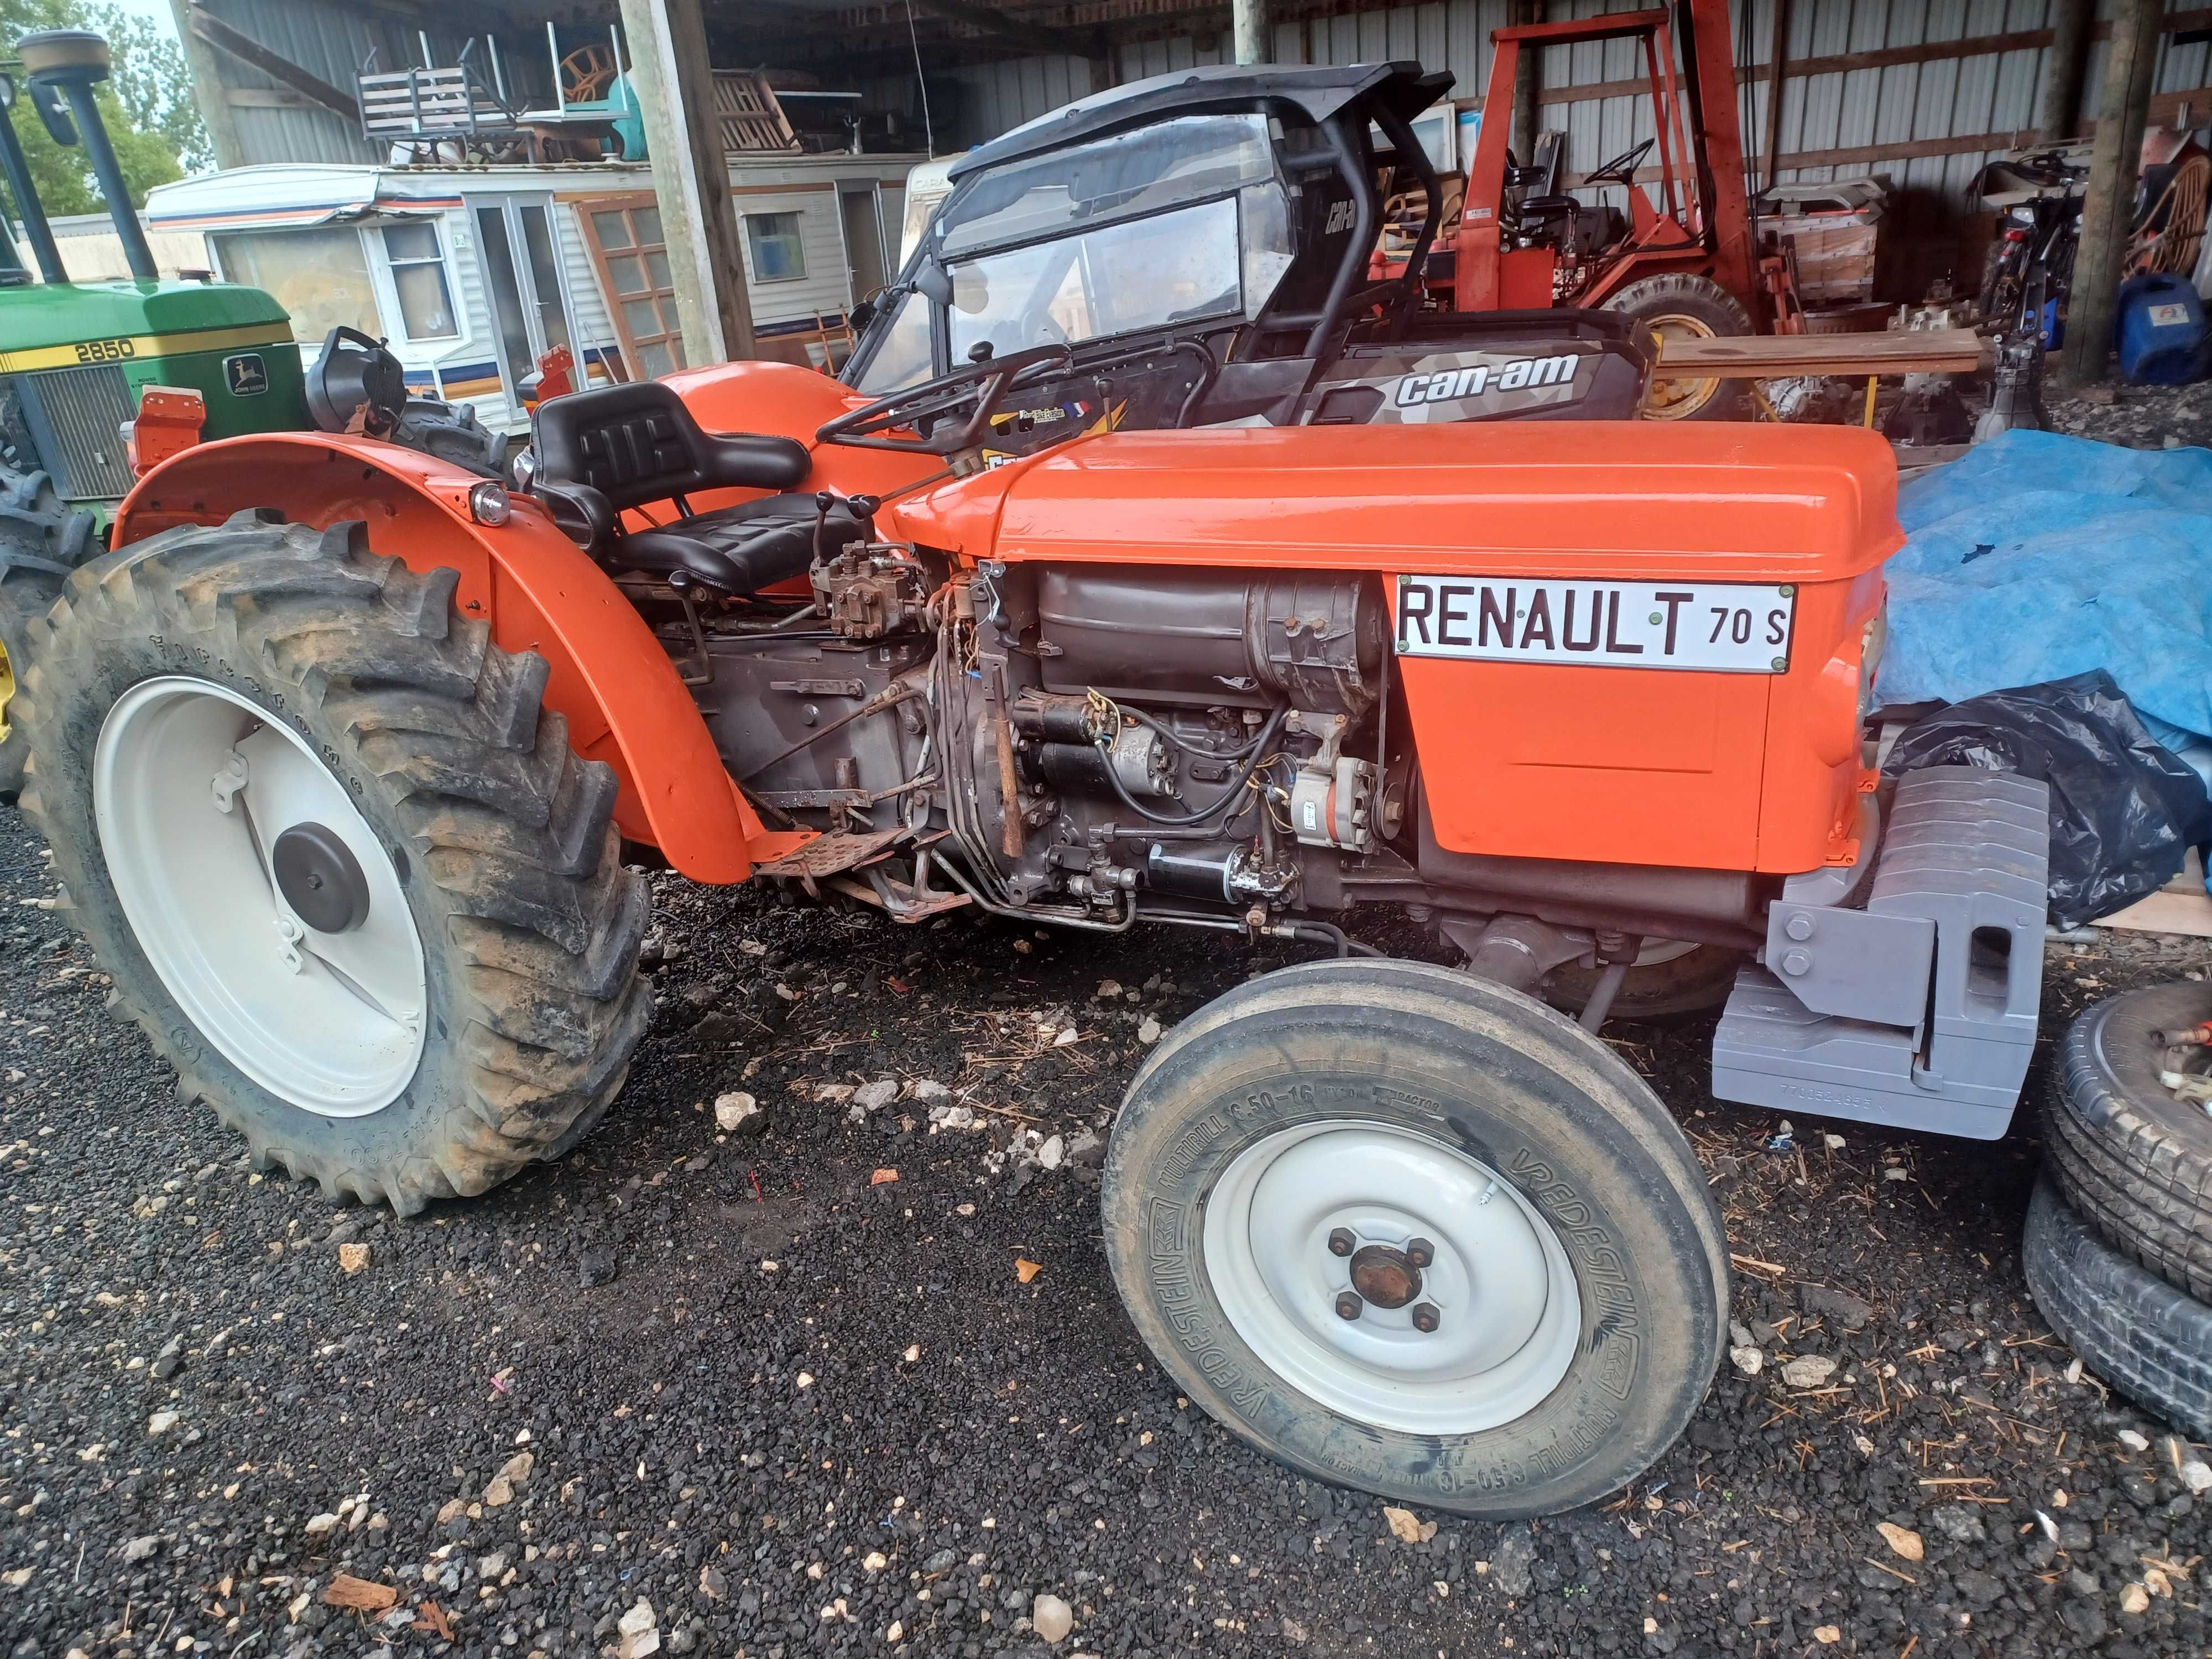 Traktor sadowniczy Renault 70 s